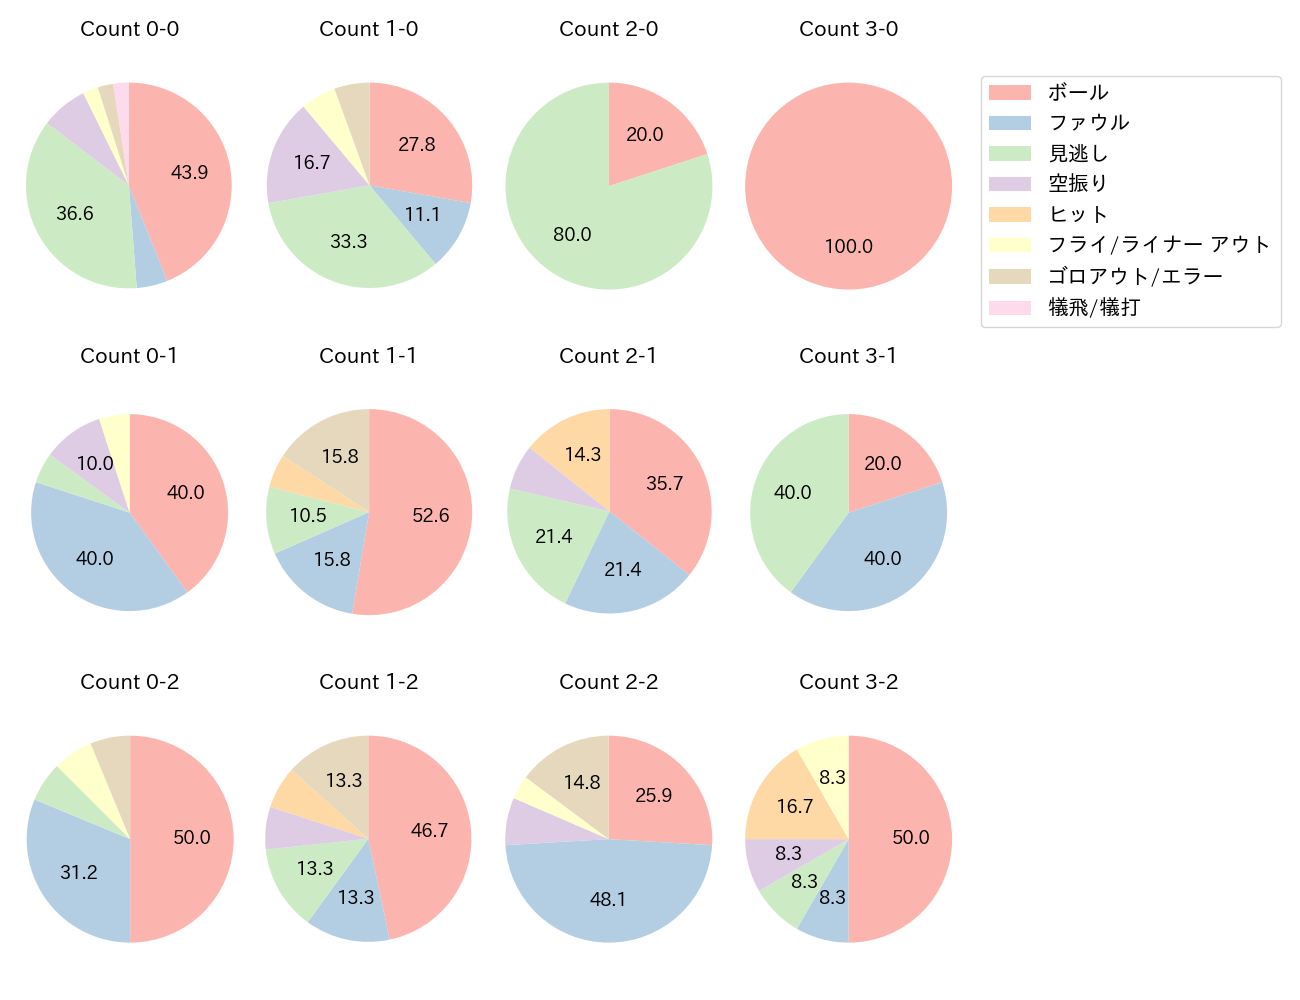 吉田 大成の球数分布(2021年7月)